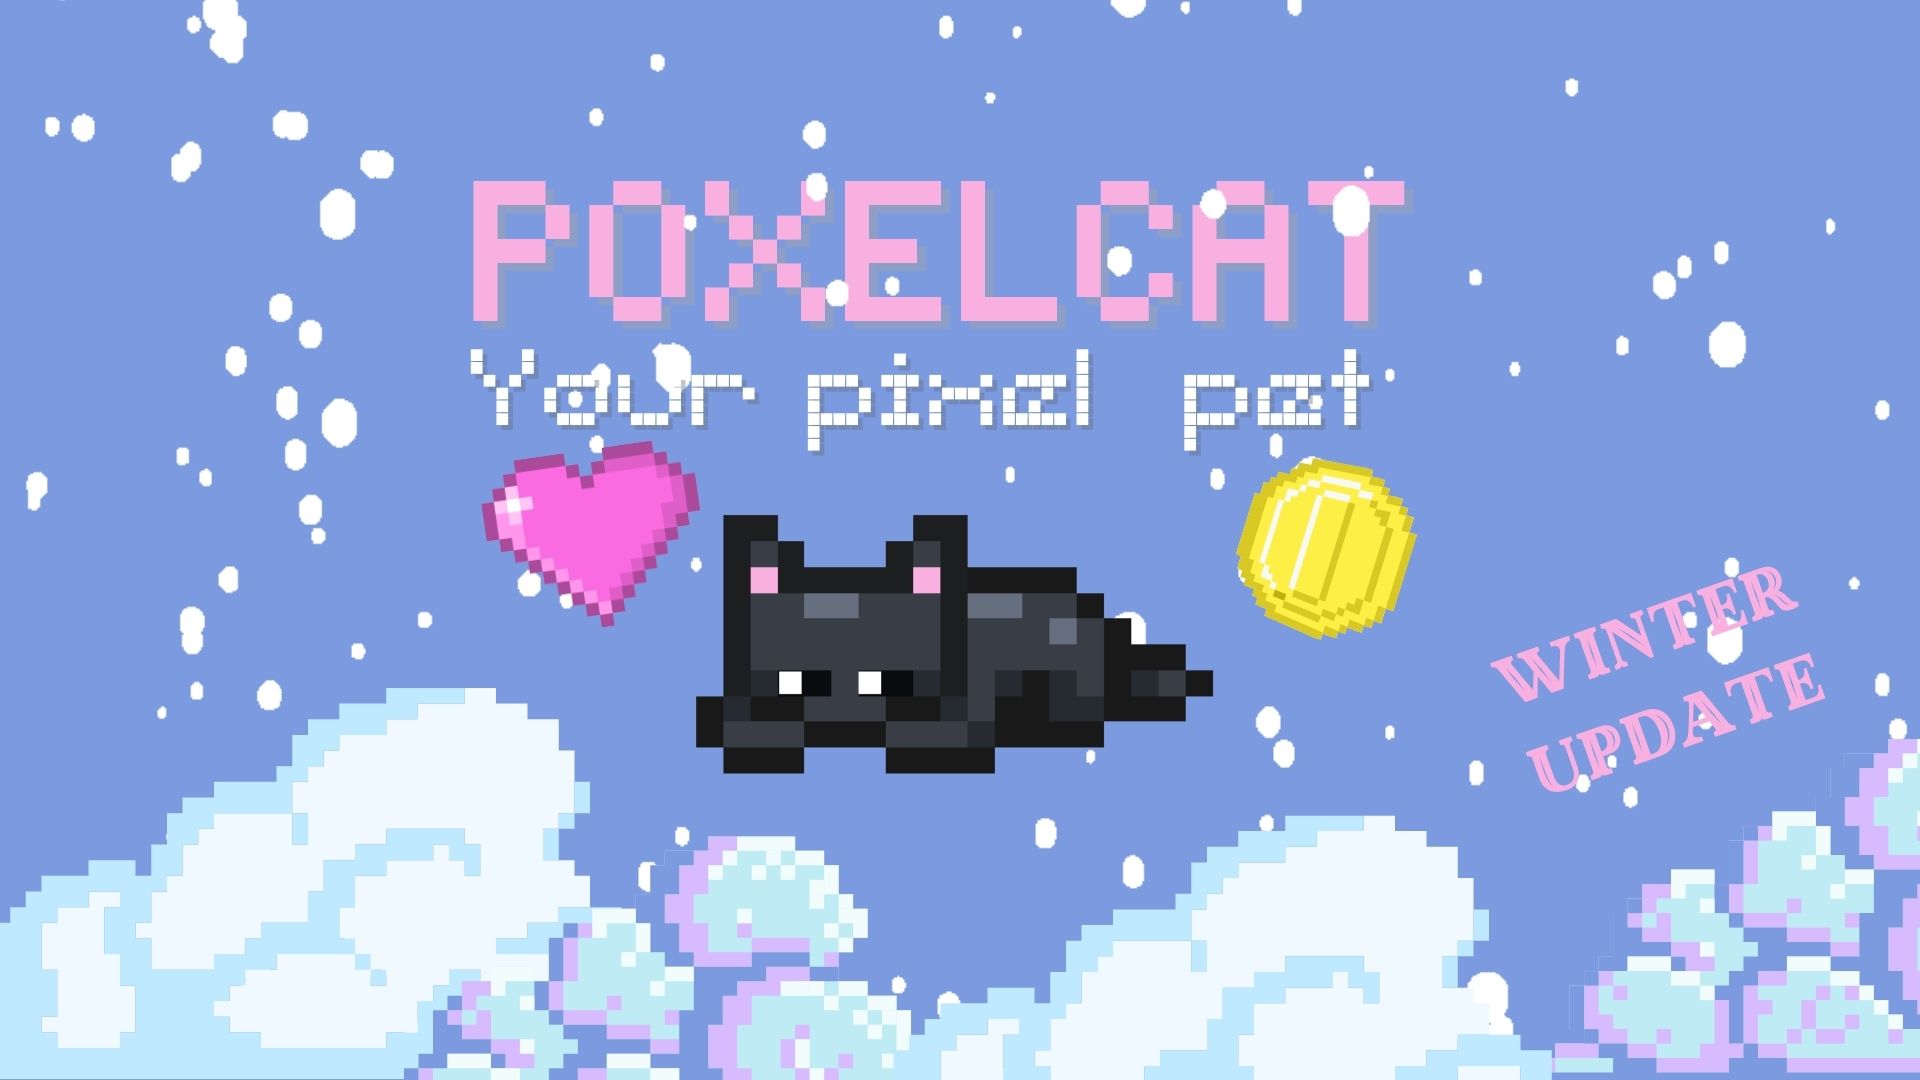 PoxelCat